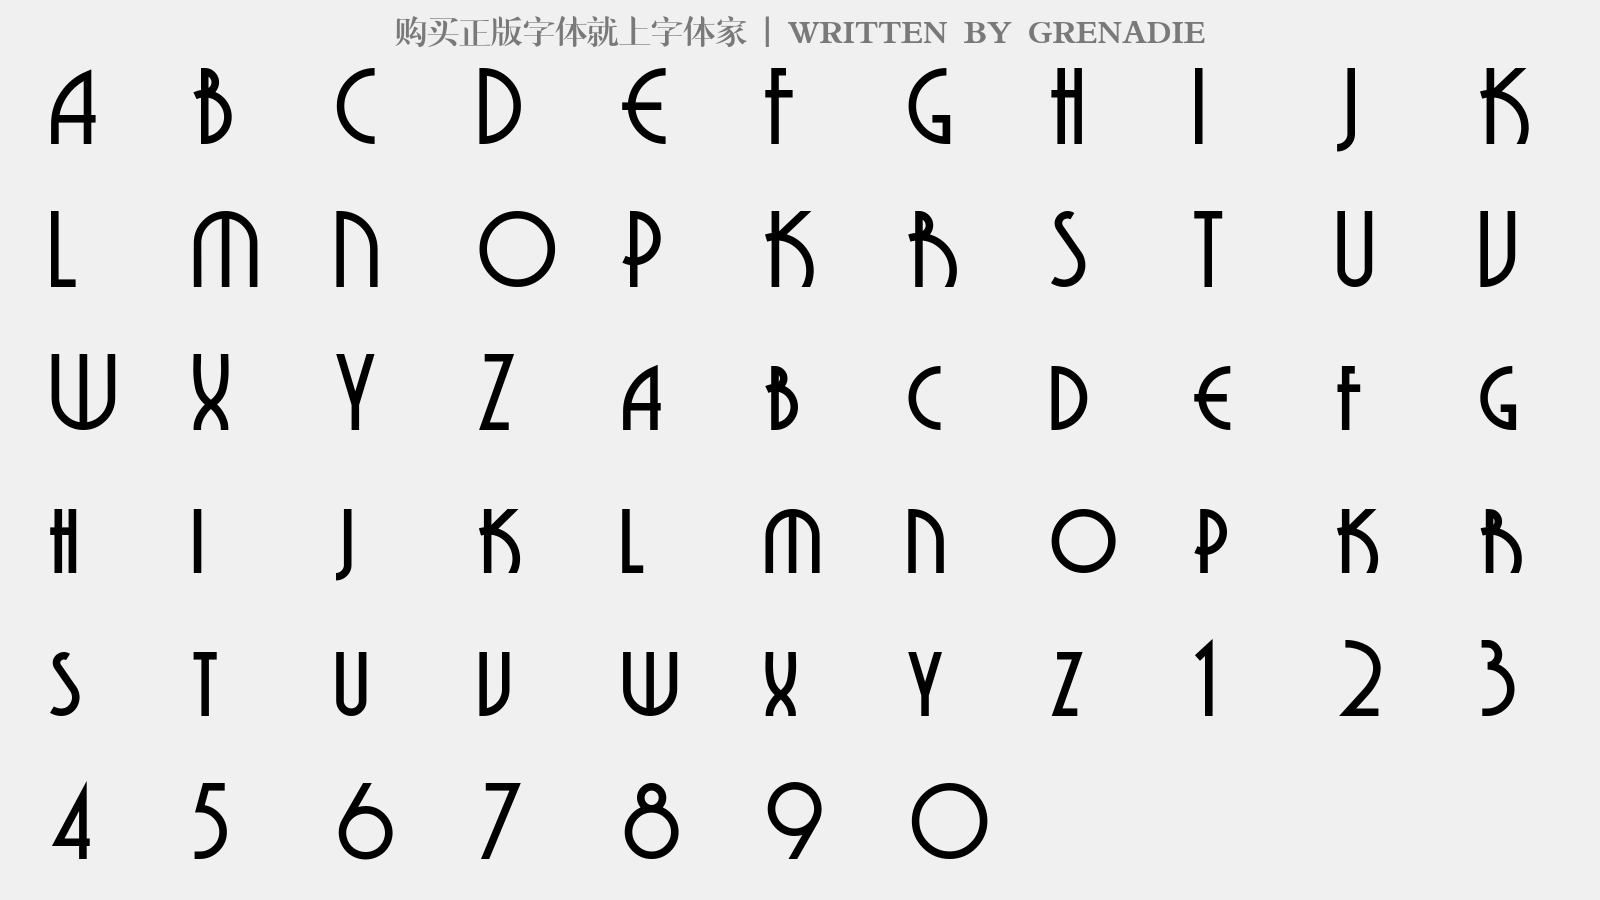 GRENADIE - 大写字母/小写字母/数字